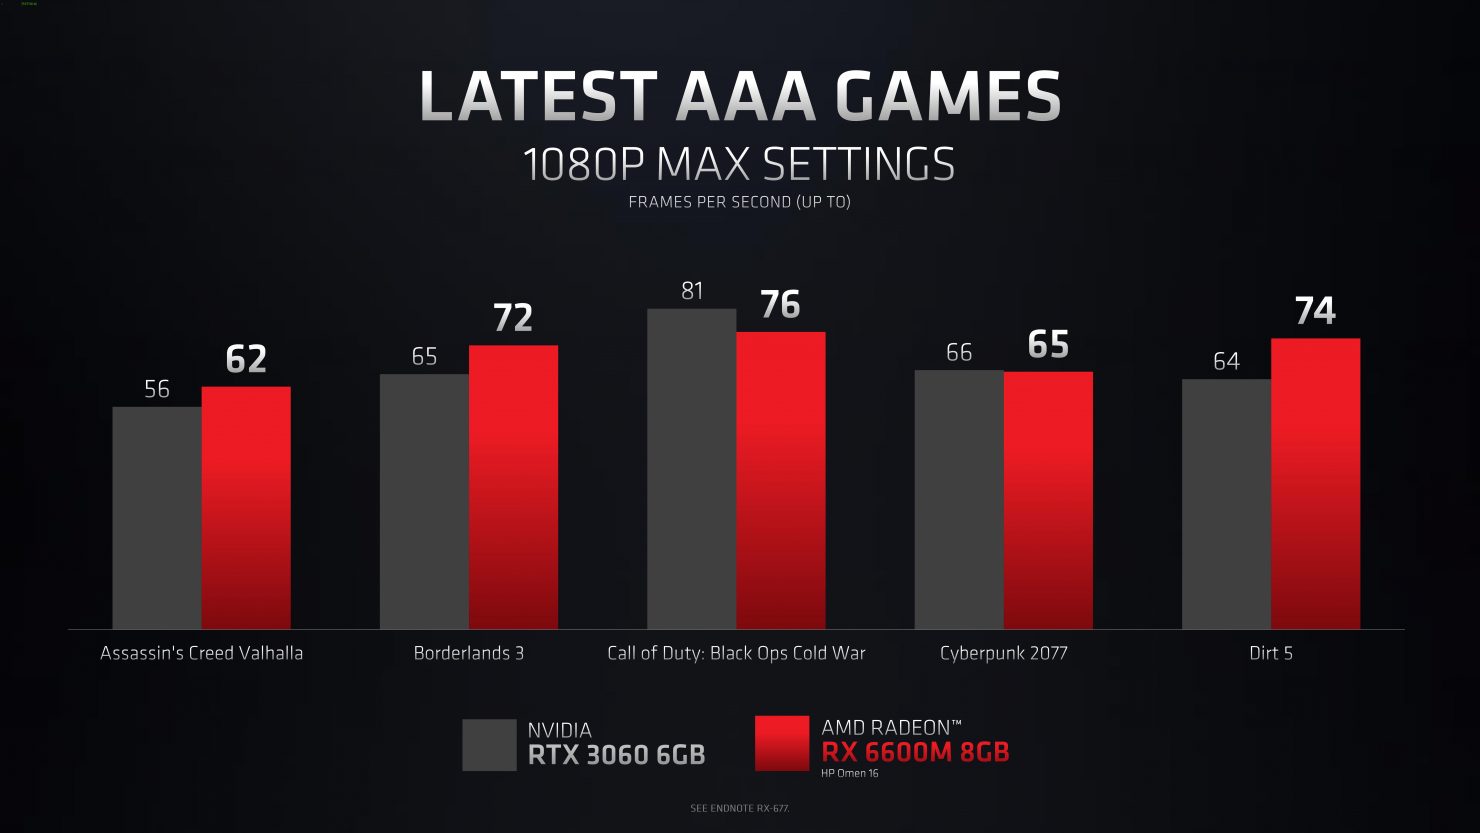 amd radeon rx6600m 3 หลุดข้อมูลการ์ดจอ AMD Radeon RX 6600M รุ่นใหม่ล่าสุดที่ใช้งานในแล็ปท็อป